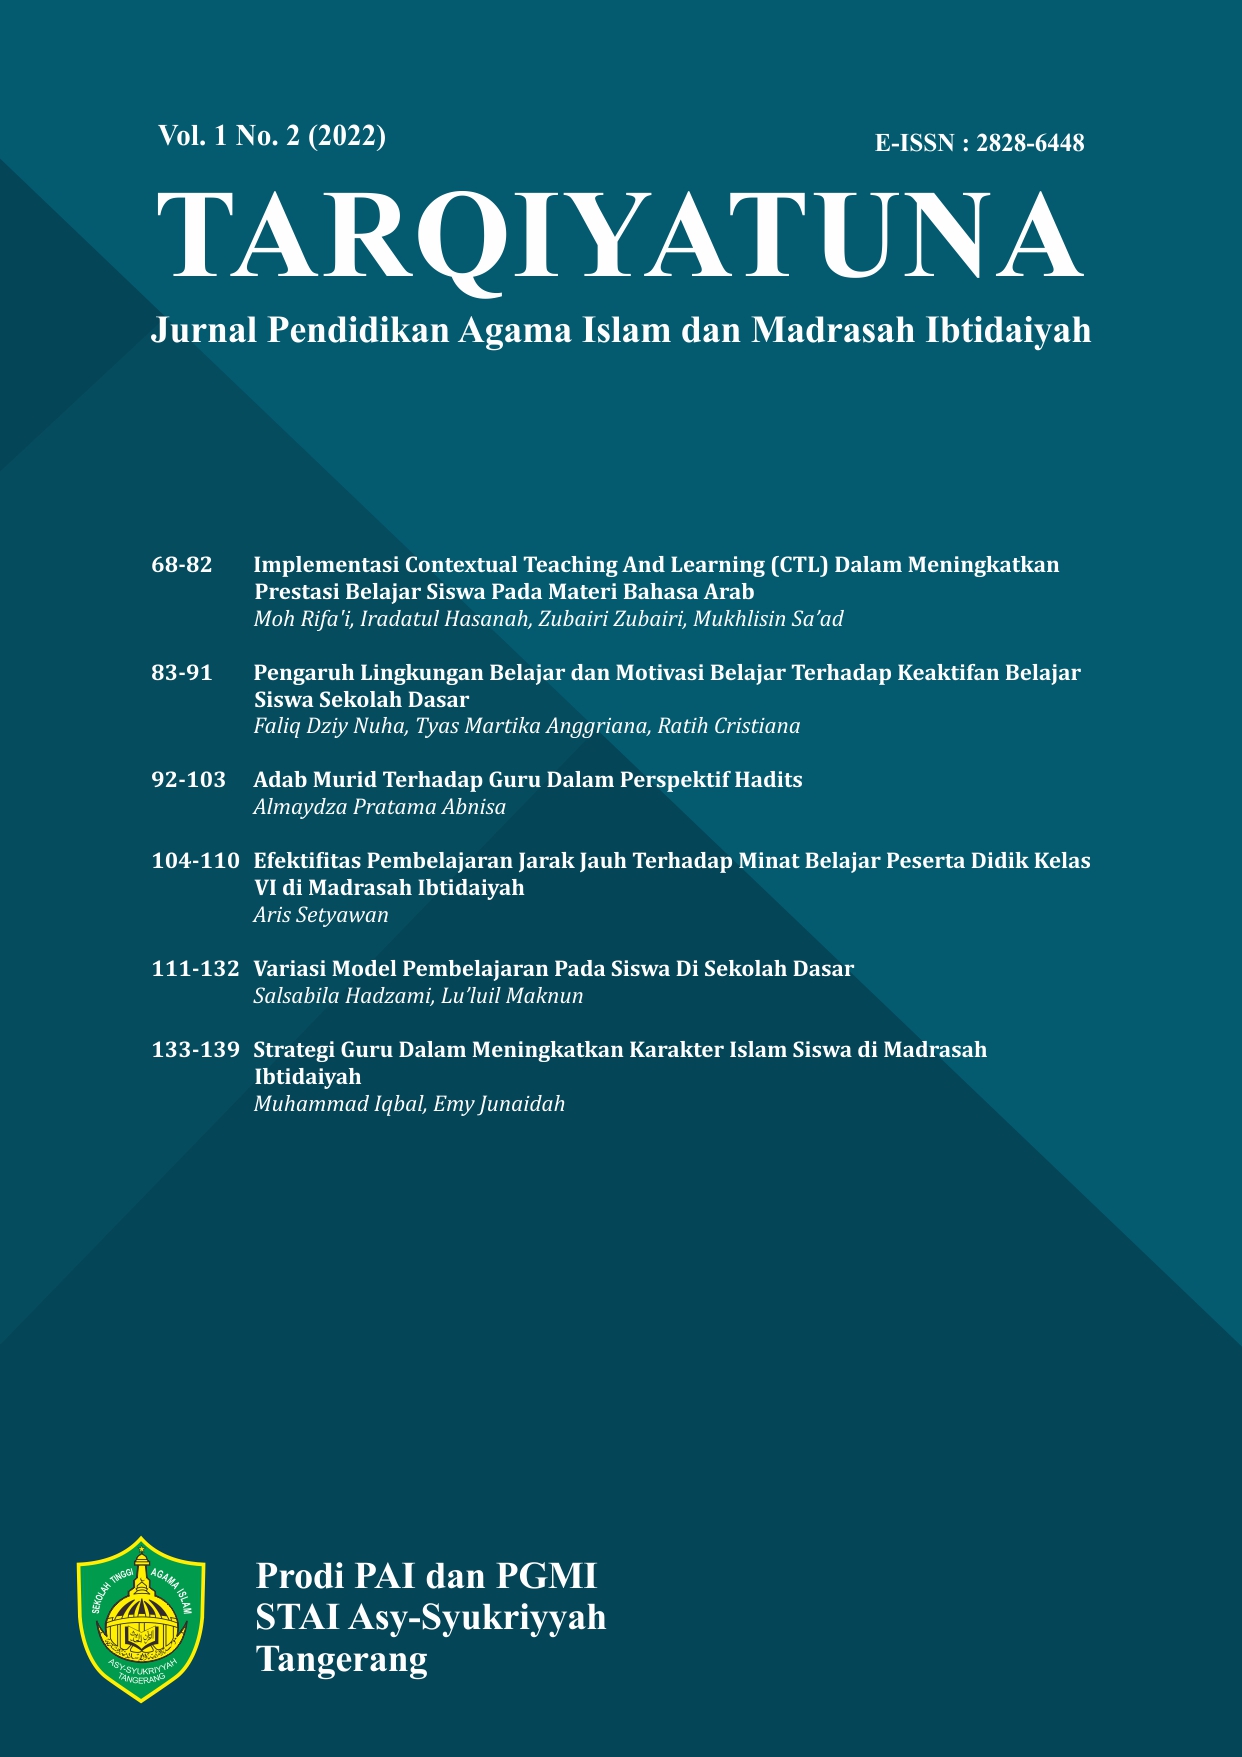 					View Vol. 1 No. 2 (2022): TARQIYATUNA: Jurnal Pendidikan Agama Islam dan Madrasah Ibtidaiyah
				